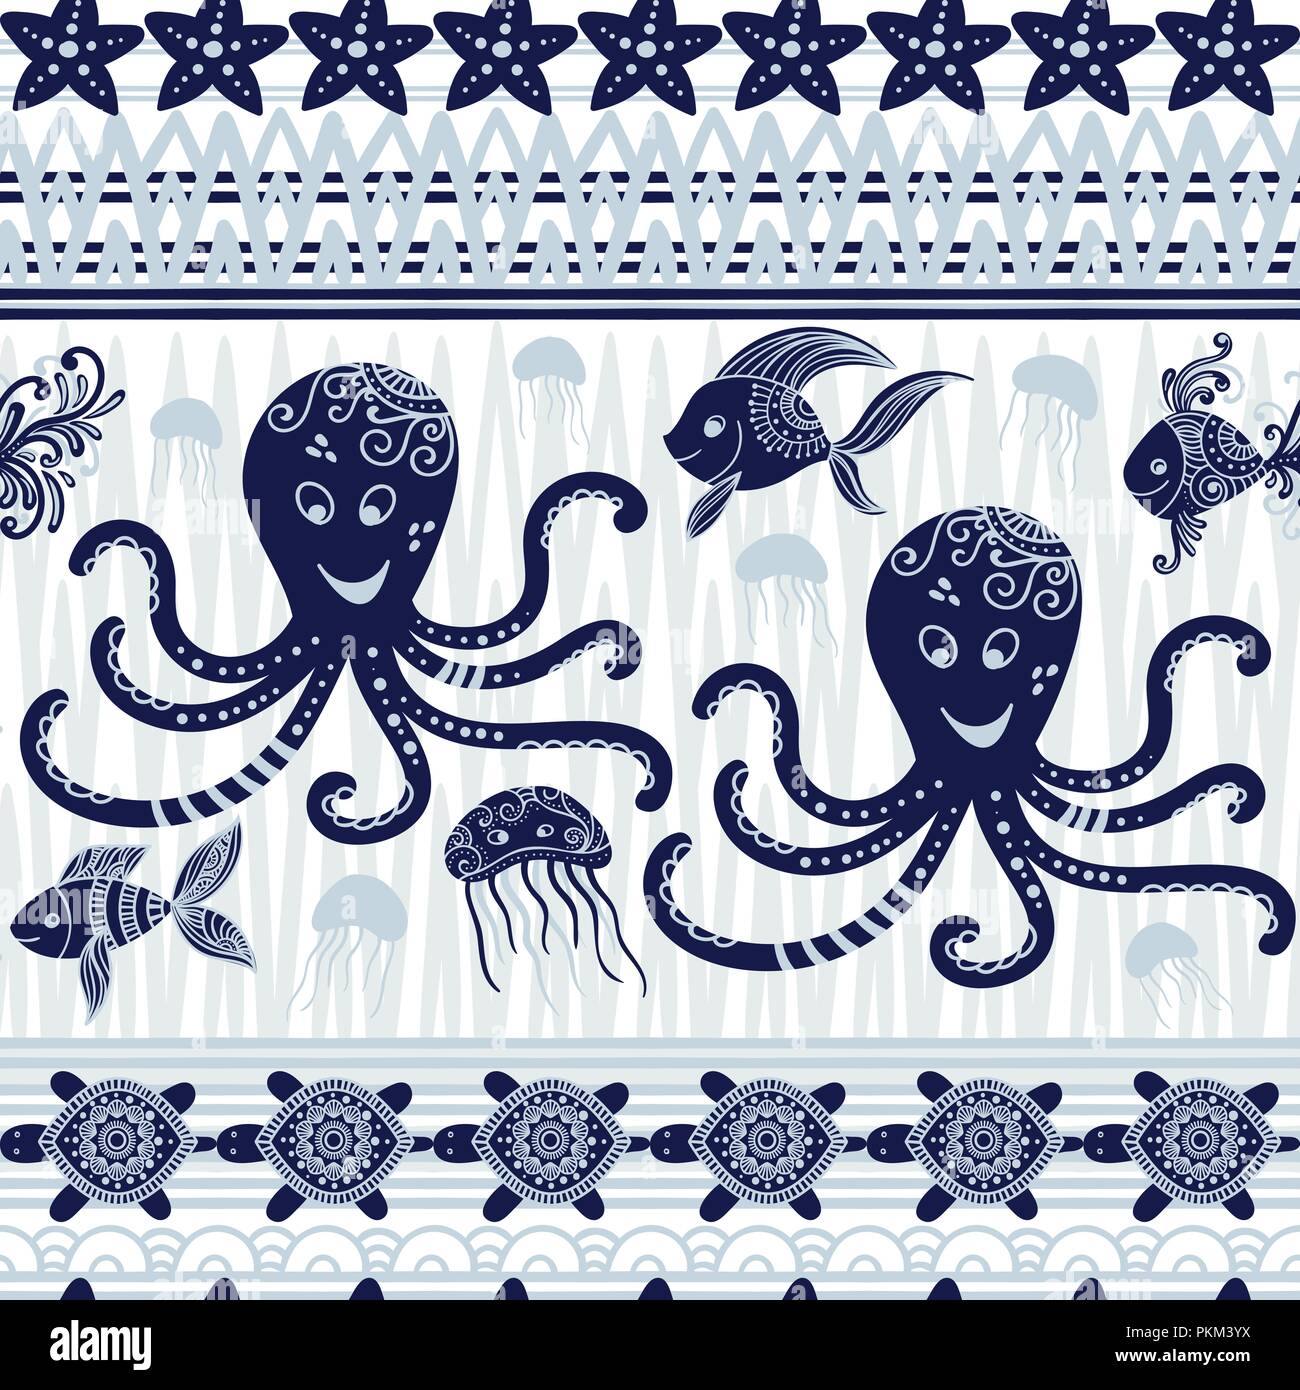 Stripe nahtlose Muster mit Meer unterwasser Tiere. Cute cartoon Qualle, Kraken, Seesterne und Schildkröten. Marine Hintergrund für Kinder. Perfekt für Textildruck, Tuch, Design und Stoff Stock Vektor